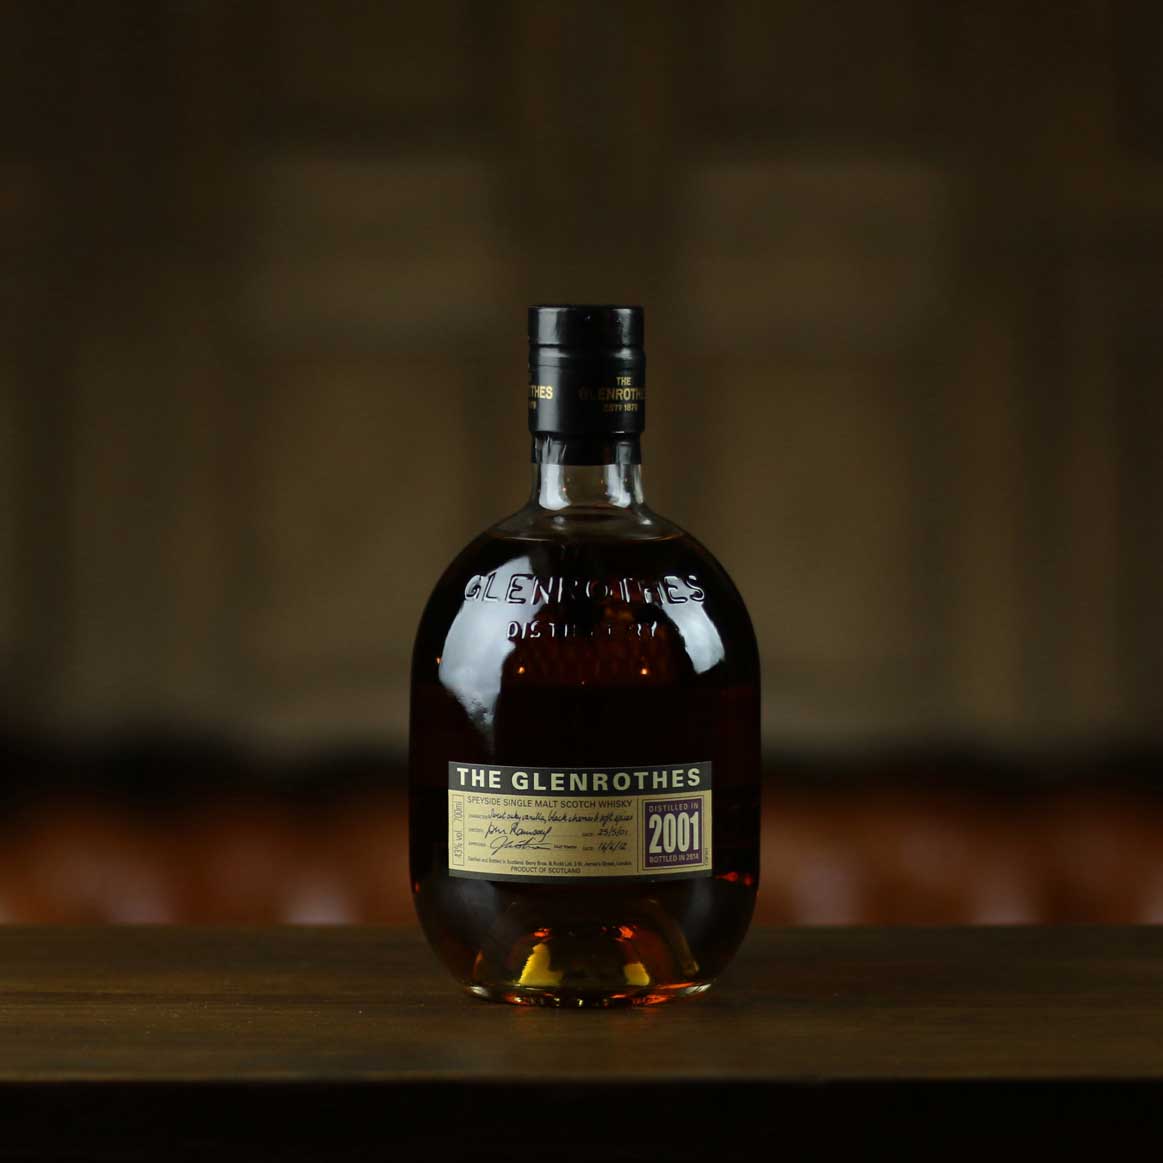 tt-liquor-buy-The-Glenrothes-2001-scotch-whisky-online-liquor-store ...